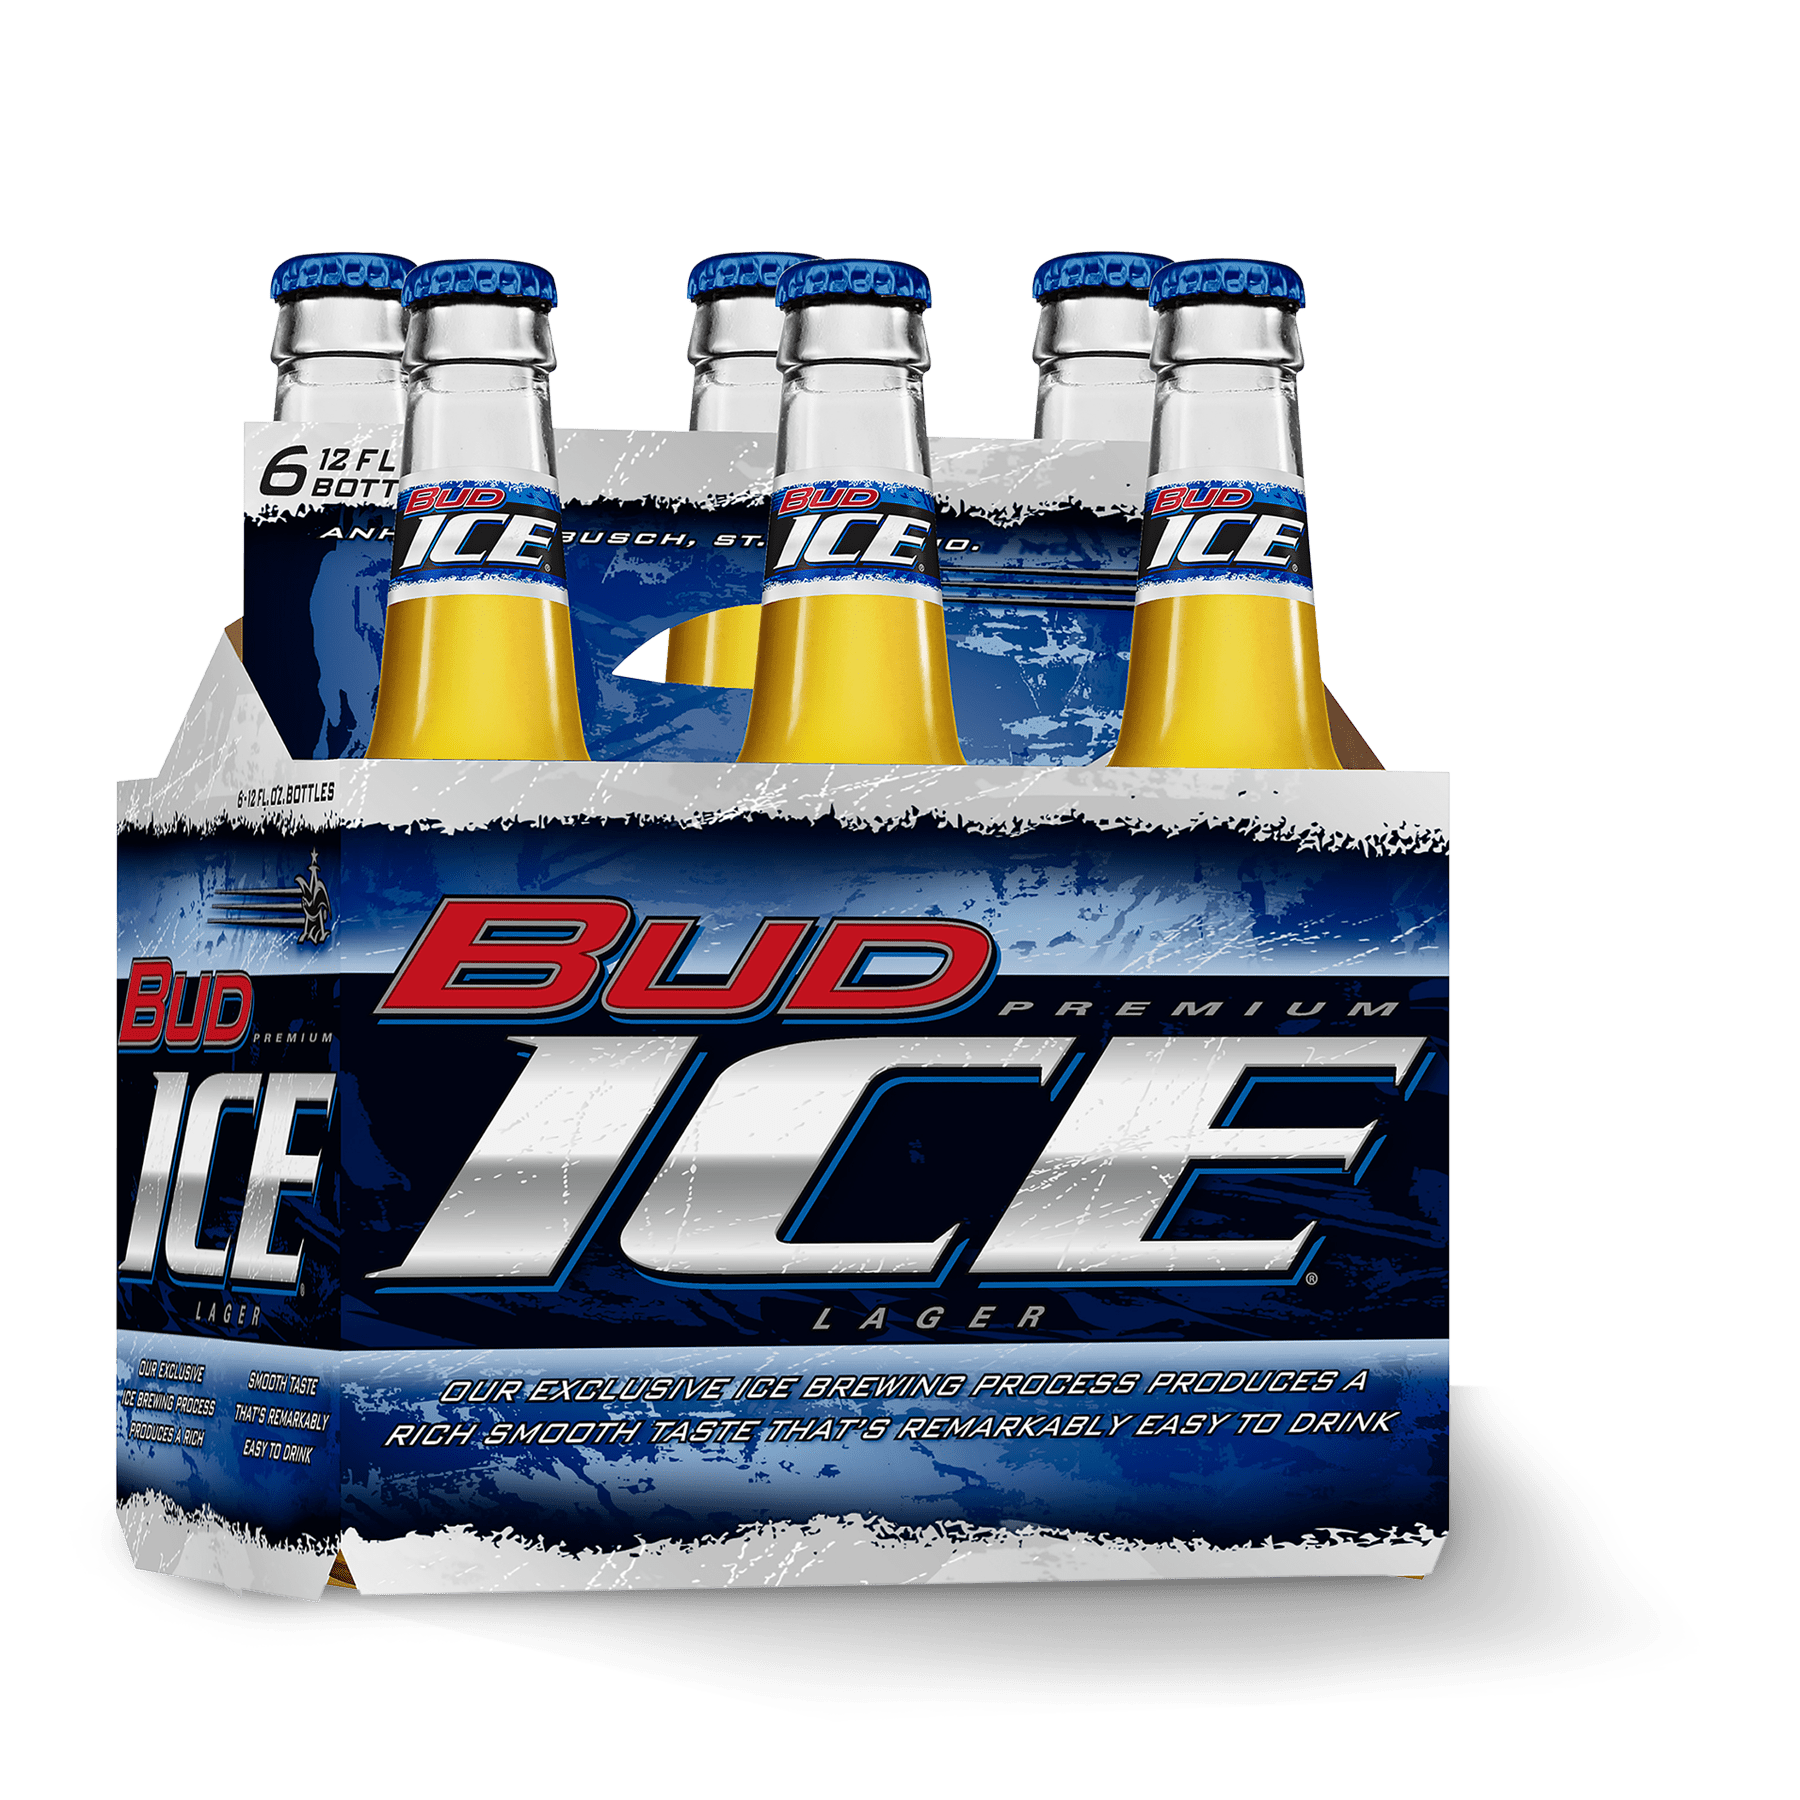 Айс бир. Айс бир пиво. Невское айс пиво. Bud Ice Beer 1996.